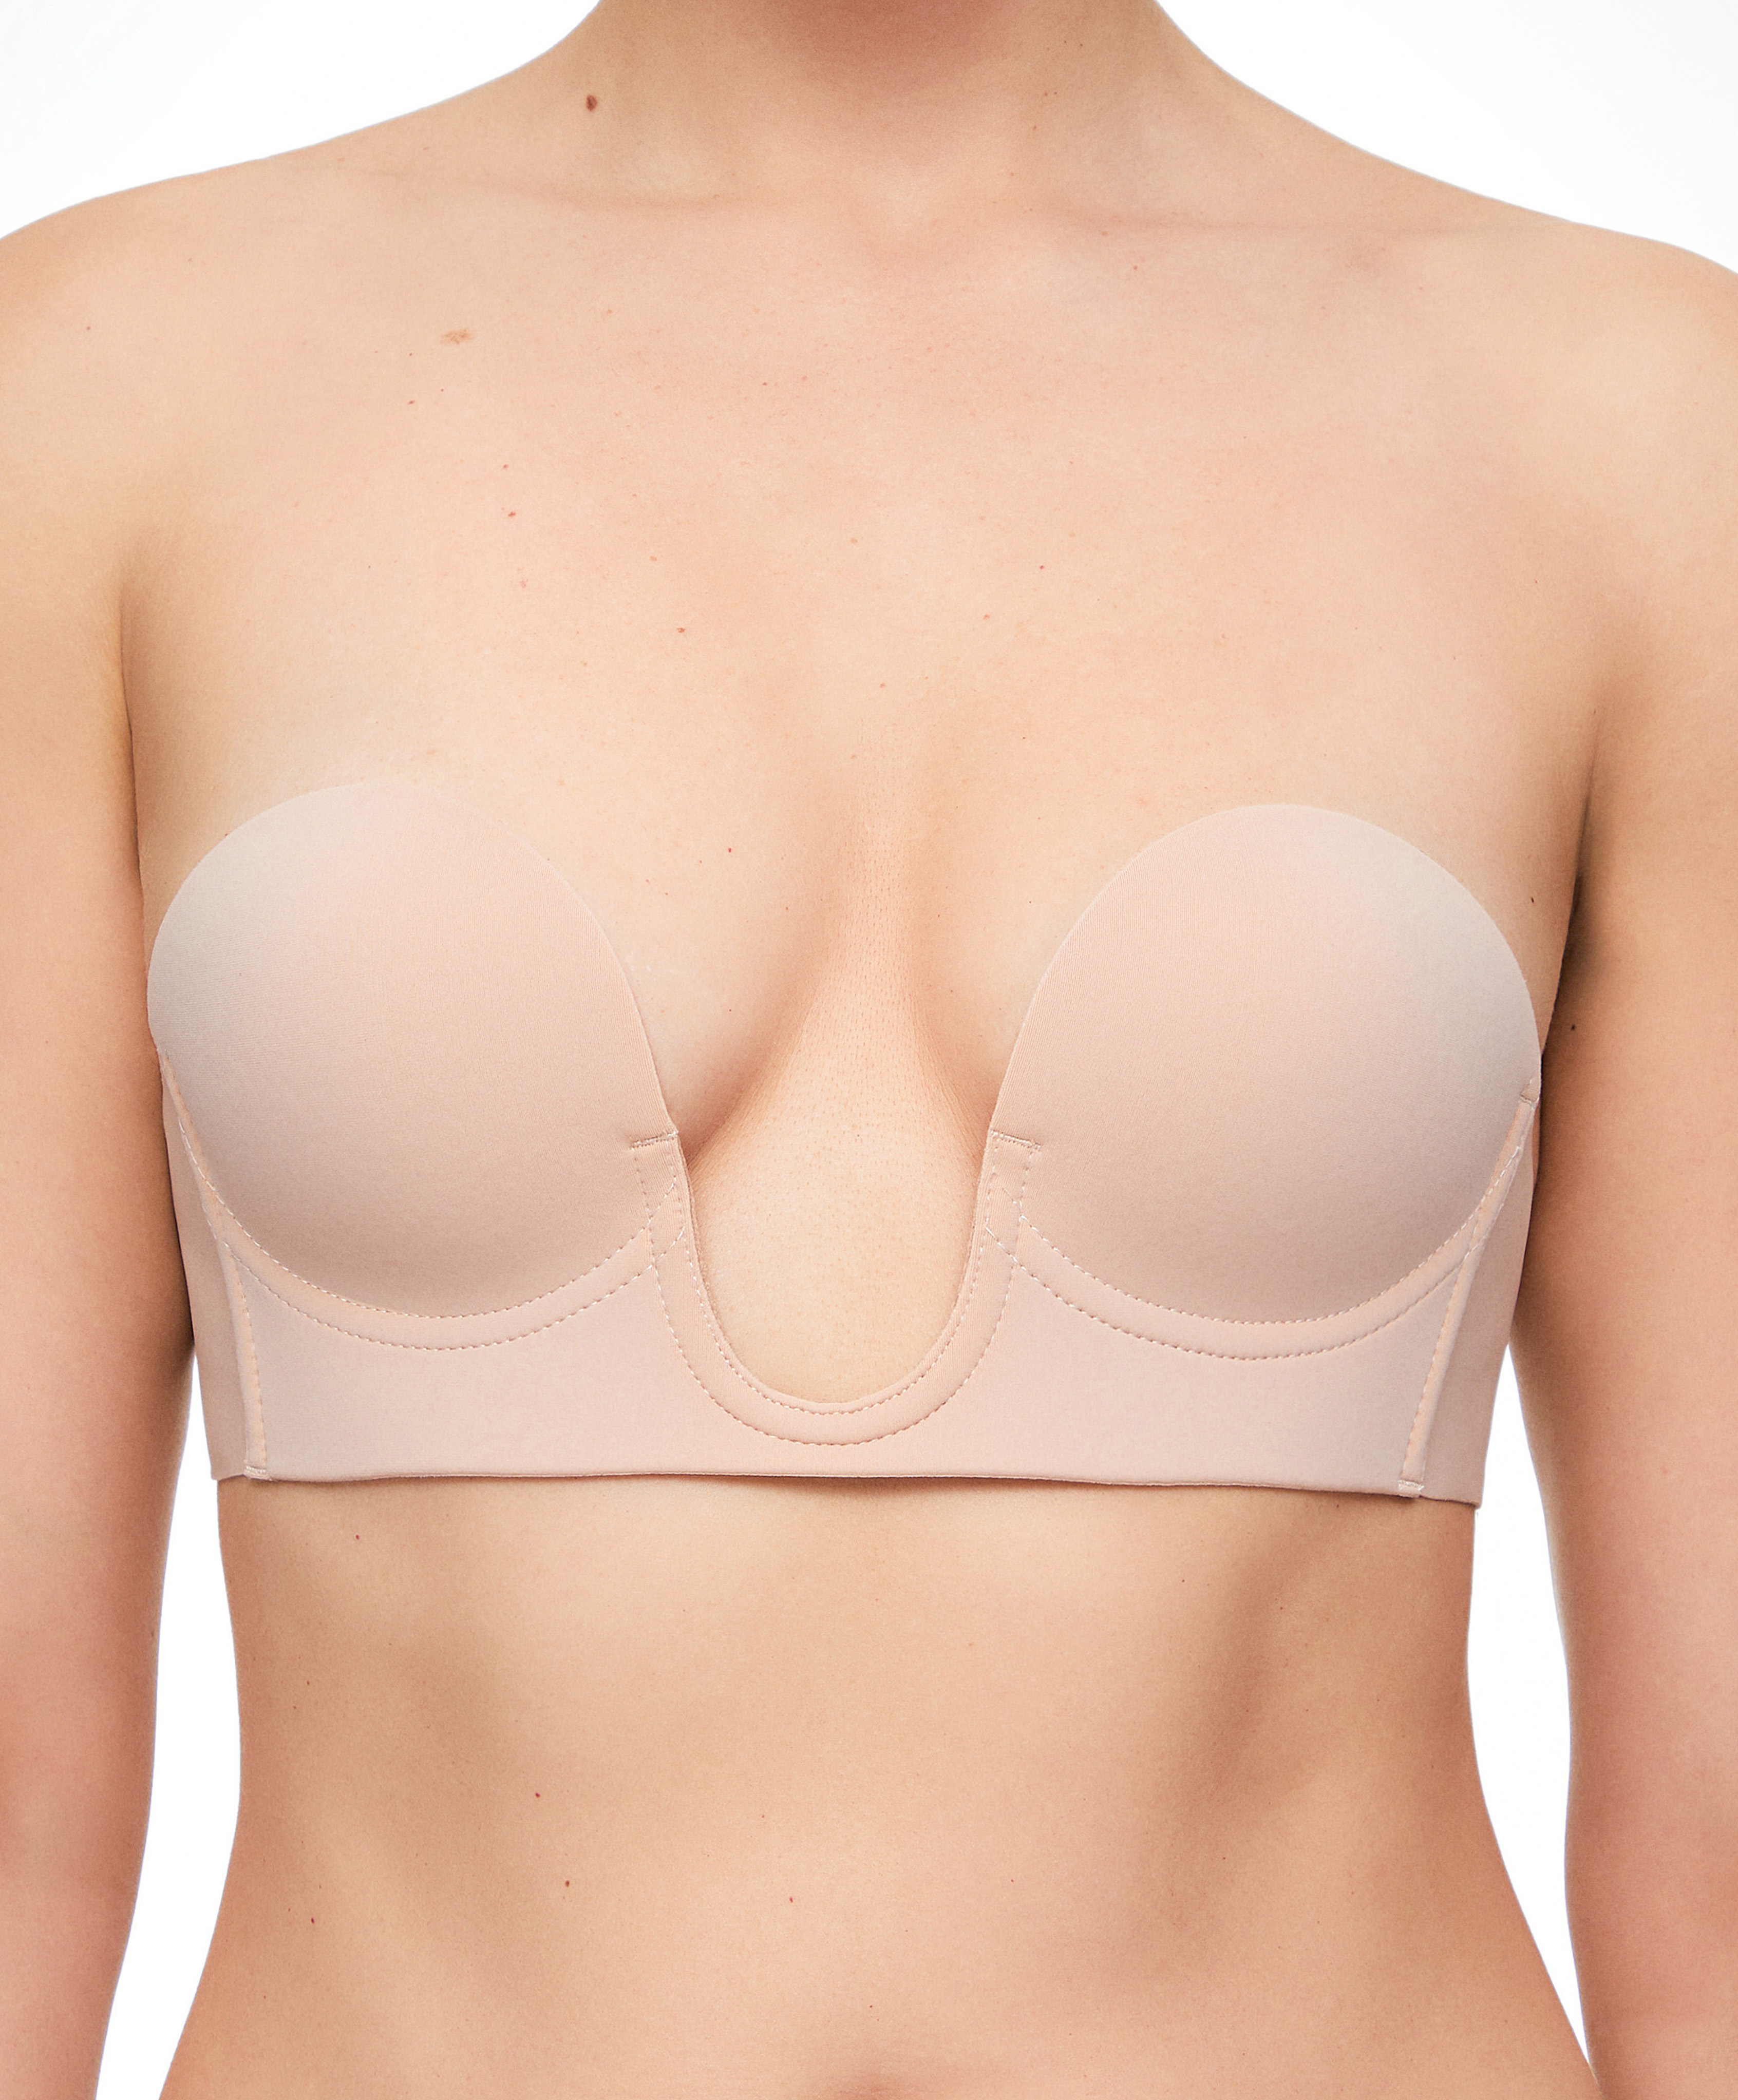 U-neck fabric adhesive bra